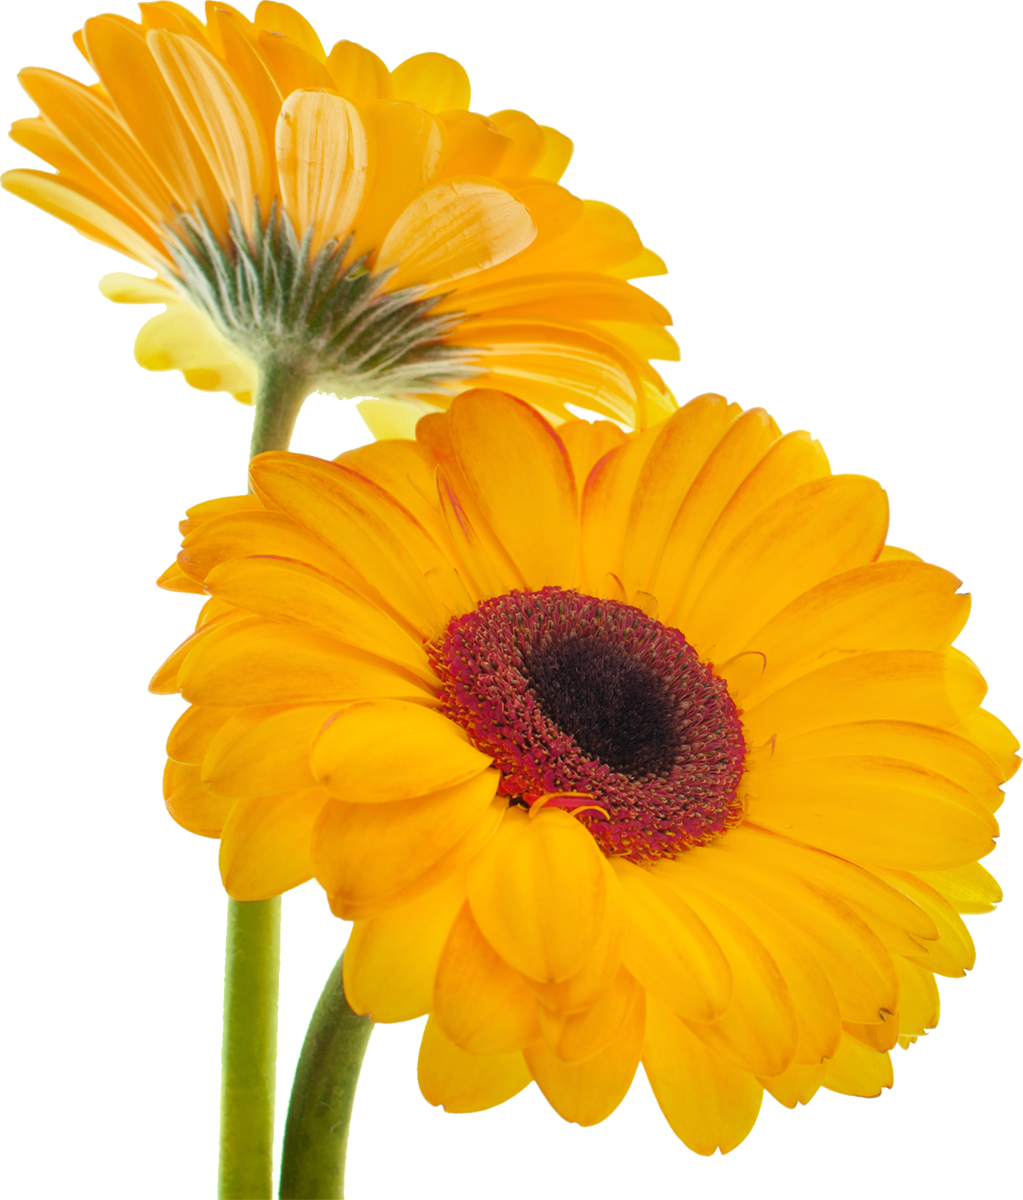 黄色の花の写真 フリー素材 No 410 黄色 ガーベラ 二輪